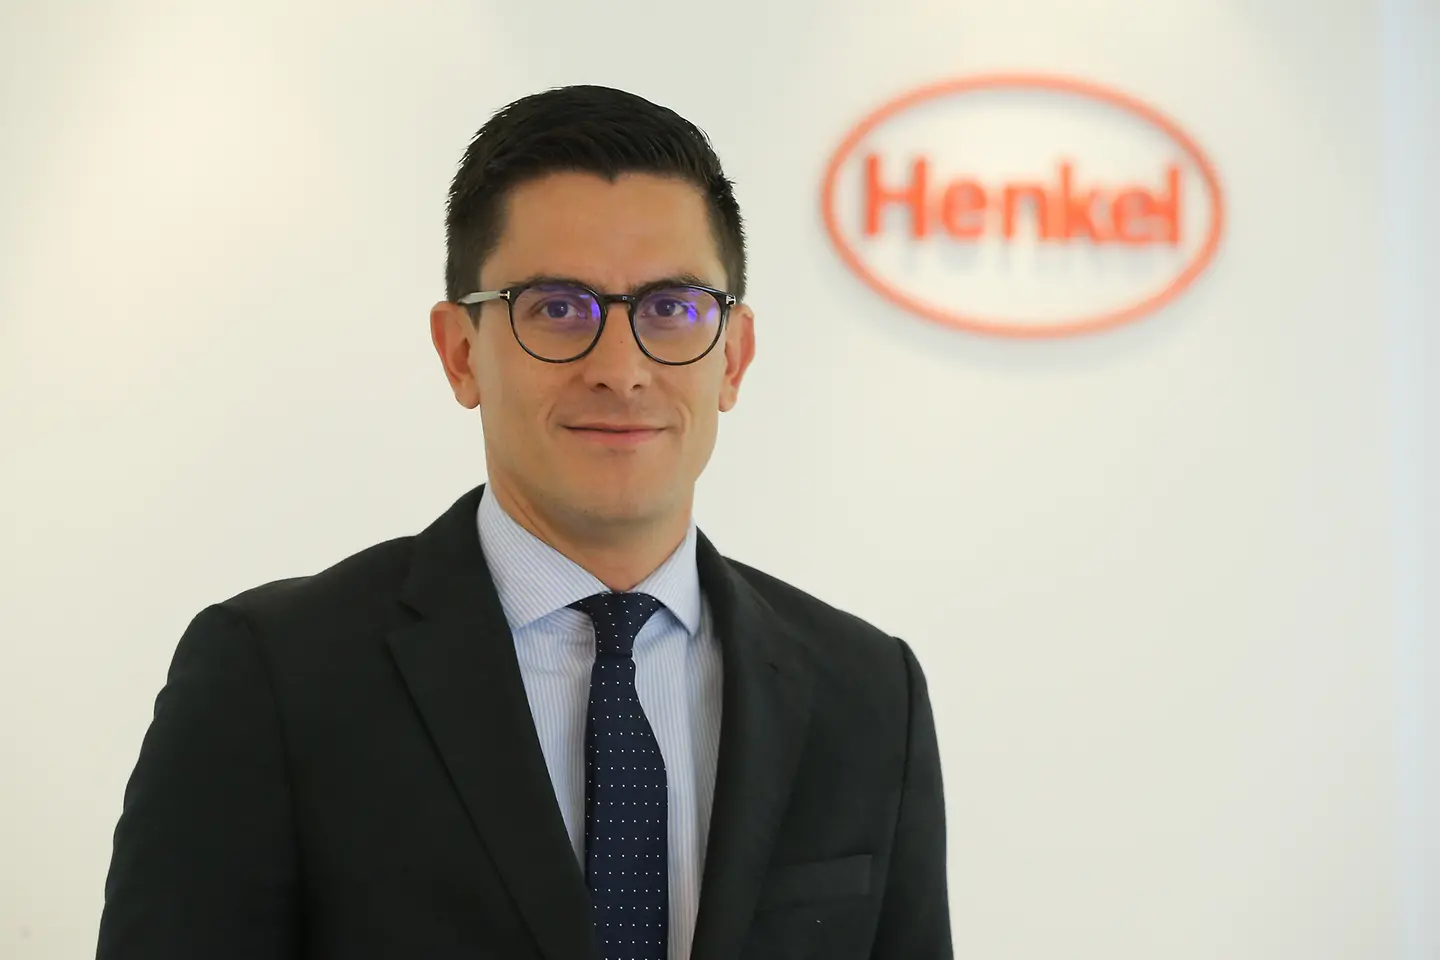 André Barón – André em pé, usando um terno preto. Ao fundo, parede branca com o logo da Henkel. 